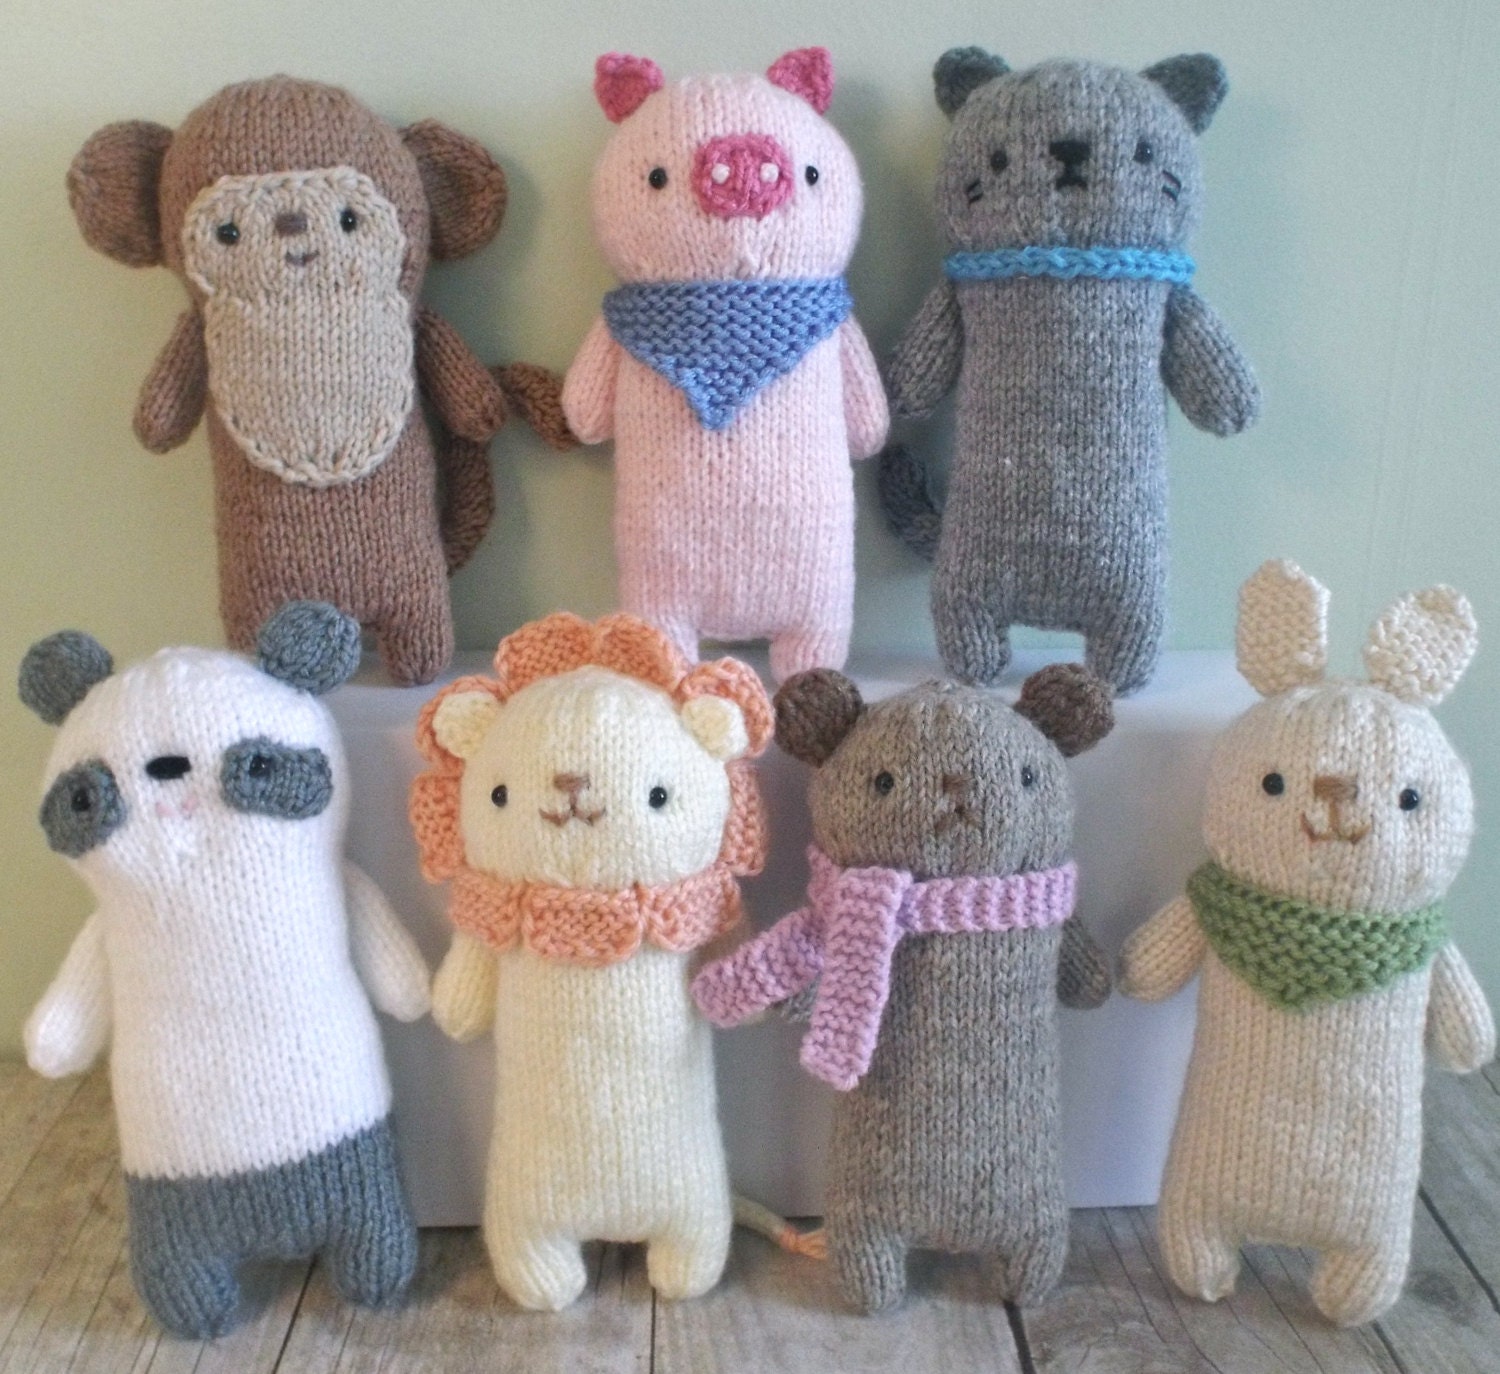 Knit Miniature Gray Owl  Knitted stuffed animals, Miniature knitting,  Amigurumi doll